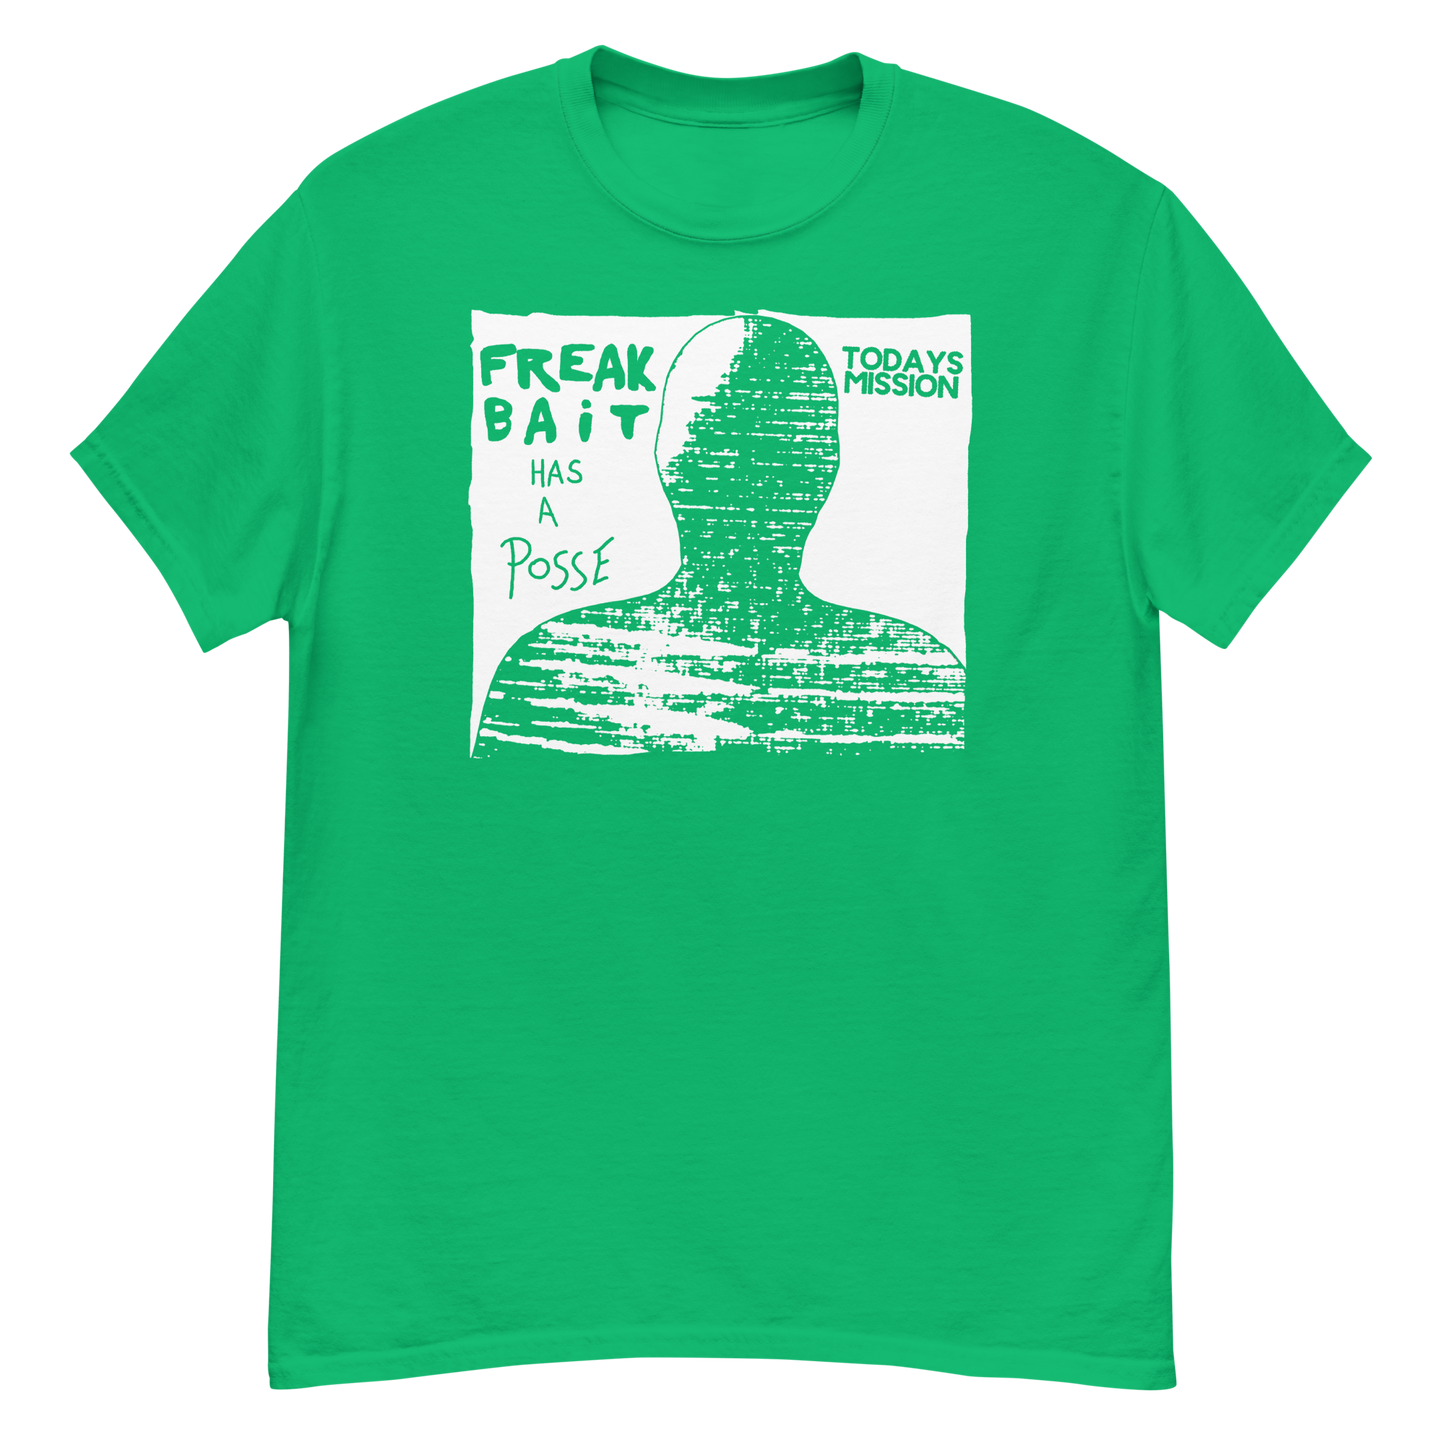 FREAKBAiT HAS A POSSE (shirt)